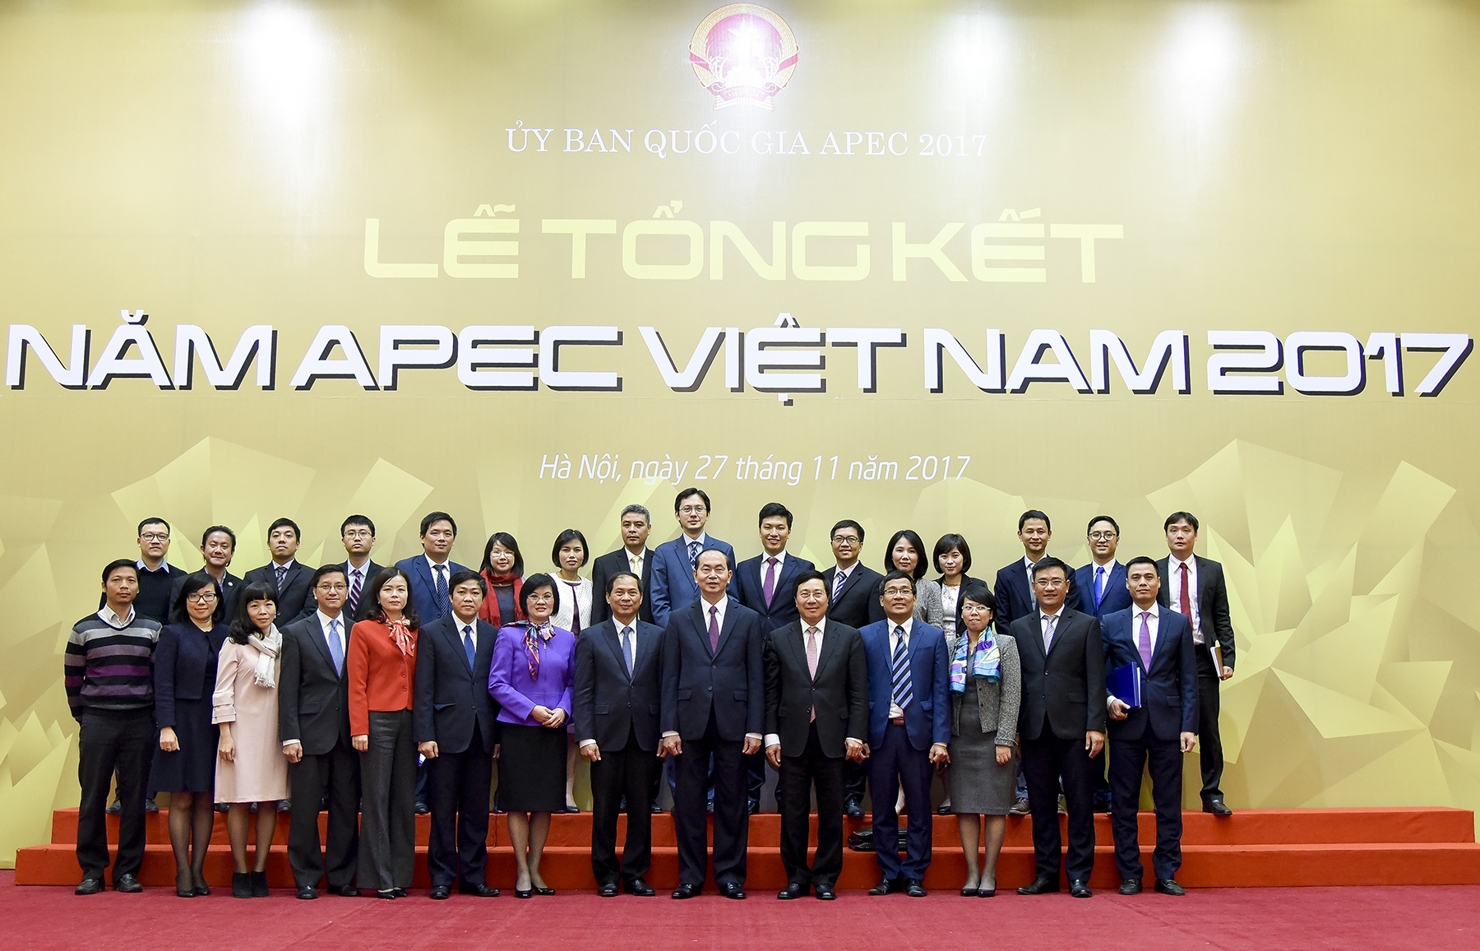 Chủ tịch nước Trần Đại Quang và các đại biểu chụp ảnh lưu niệm tại Lễ Tổng kết Năm APEC 2017, ngày 27/11/2017, tại Hà Nội. 